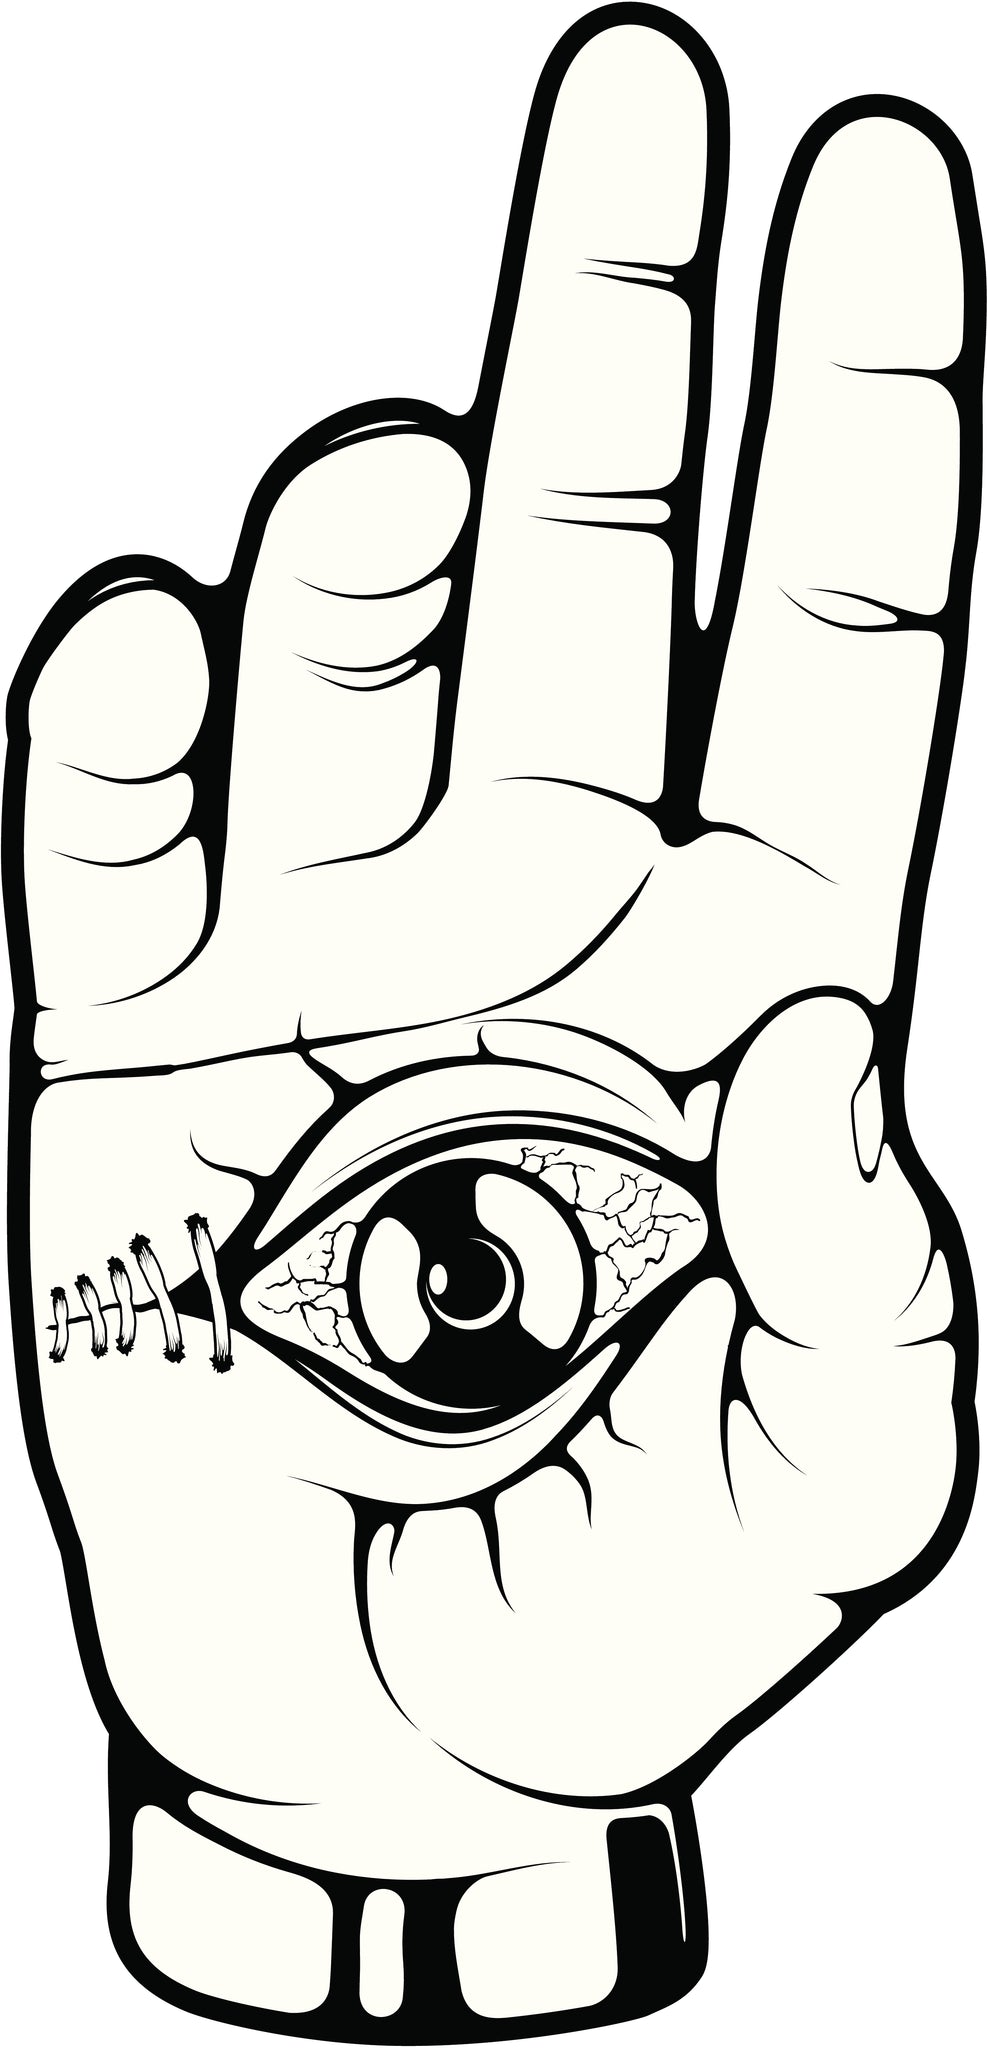 Zombie Frankenstein Hand with Eye in Palm Vinyl Decal Sticker